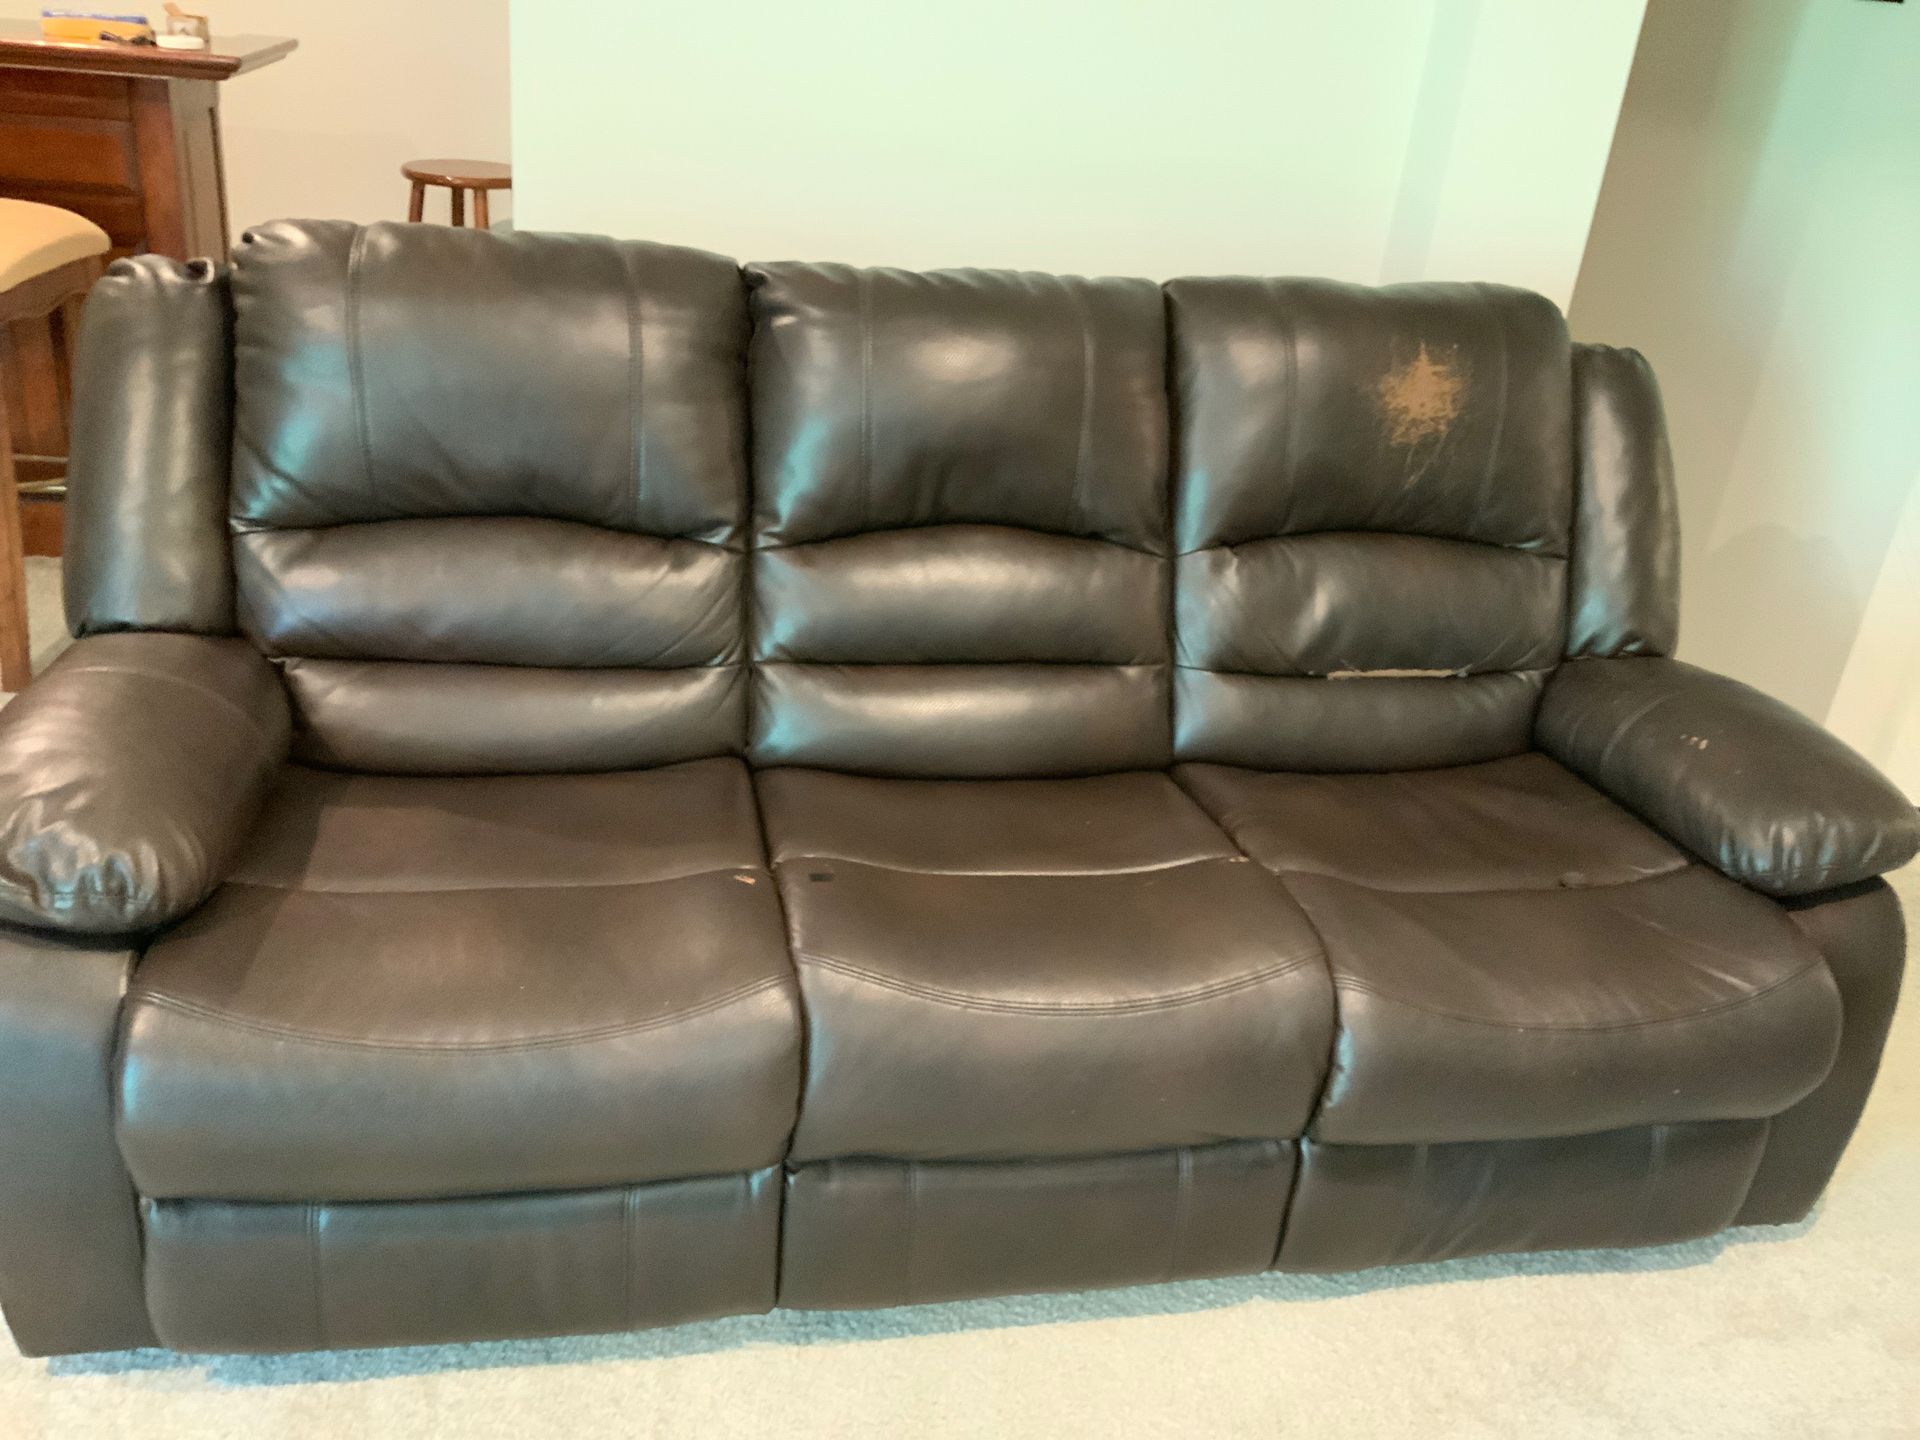 Recliner sofa